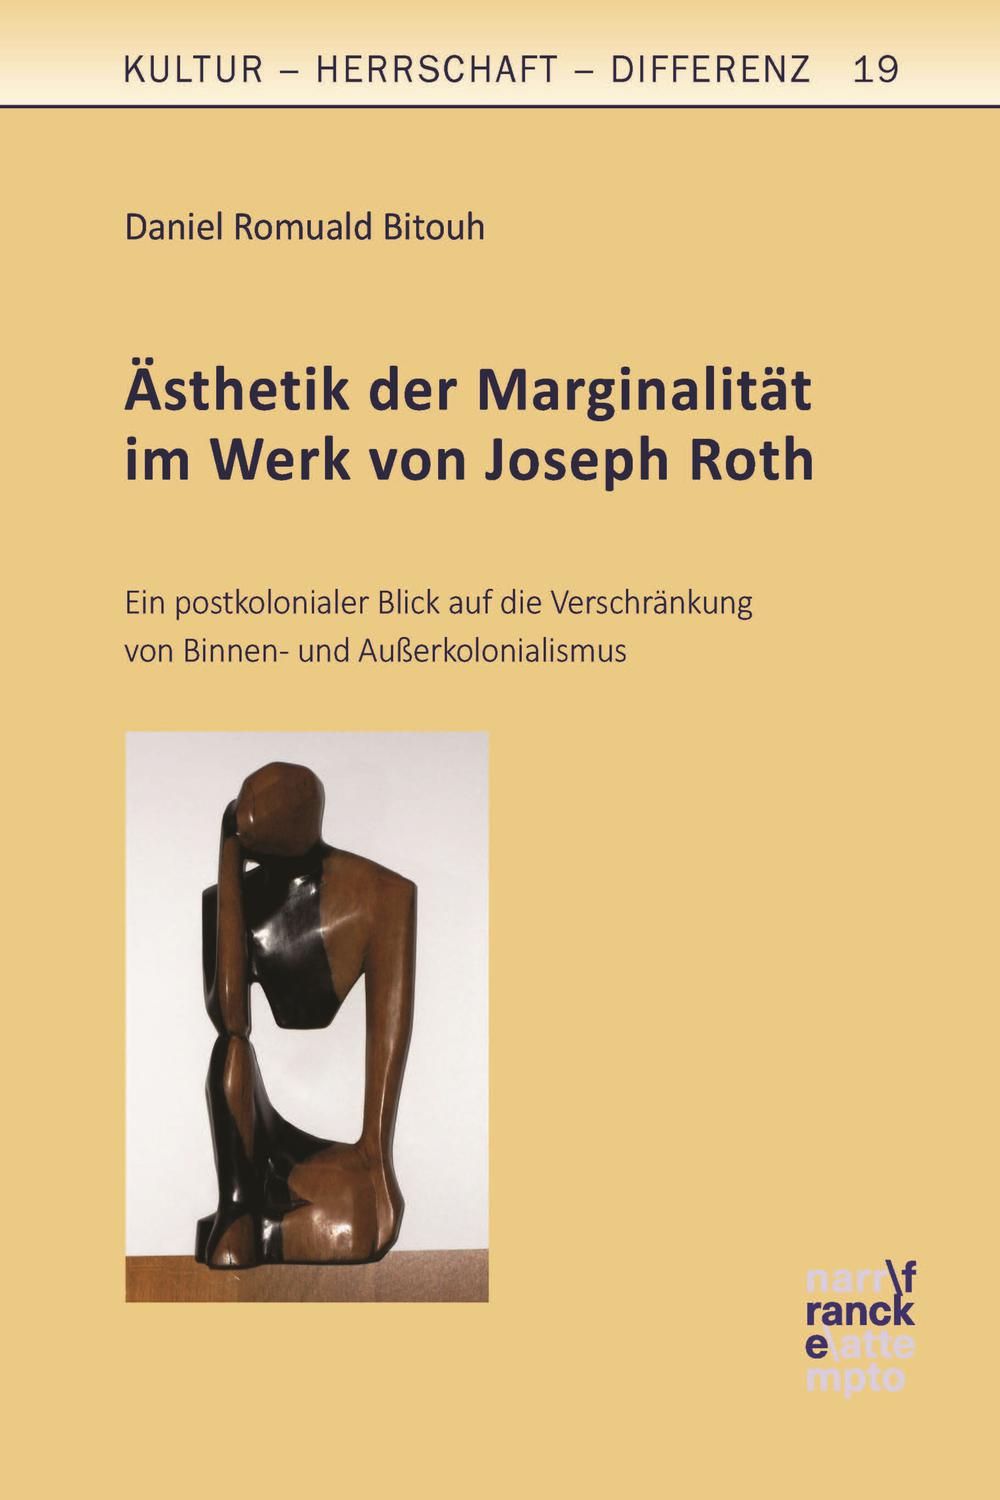 Ästhetik der Marginalität im Werk Joseph Roths - Daniel R. Bitouh